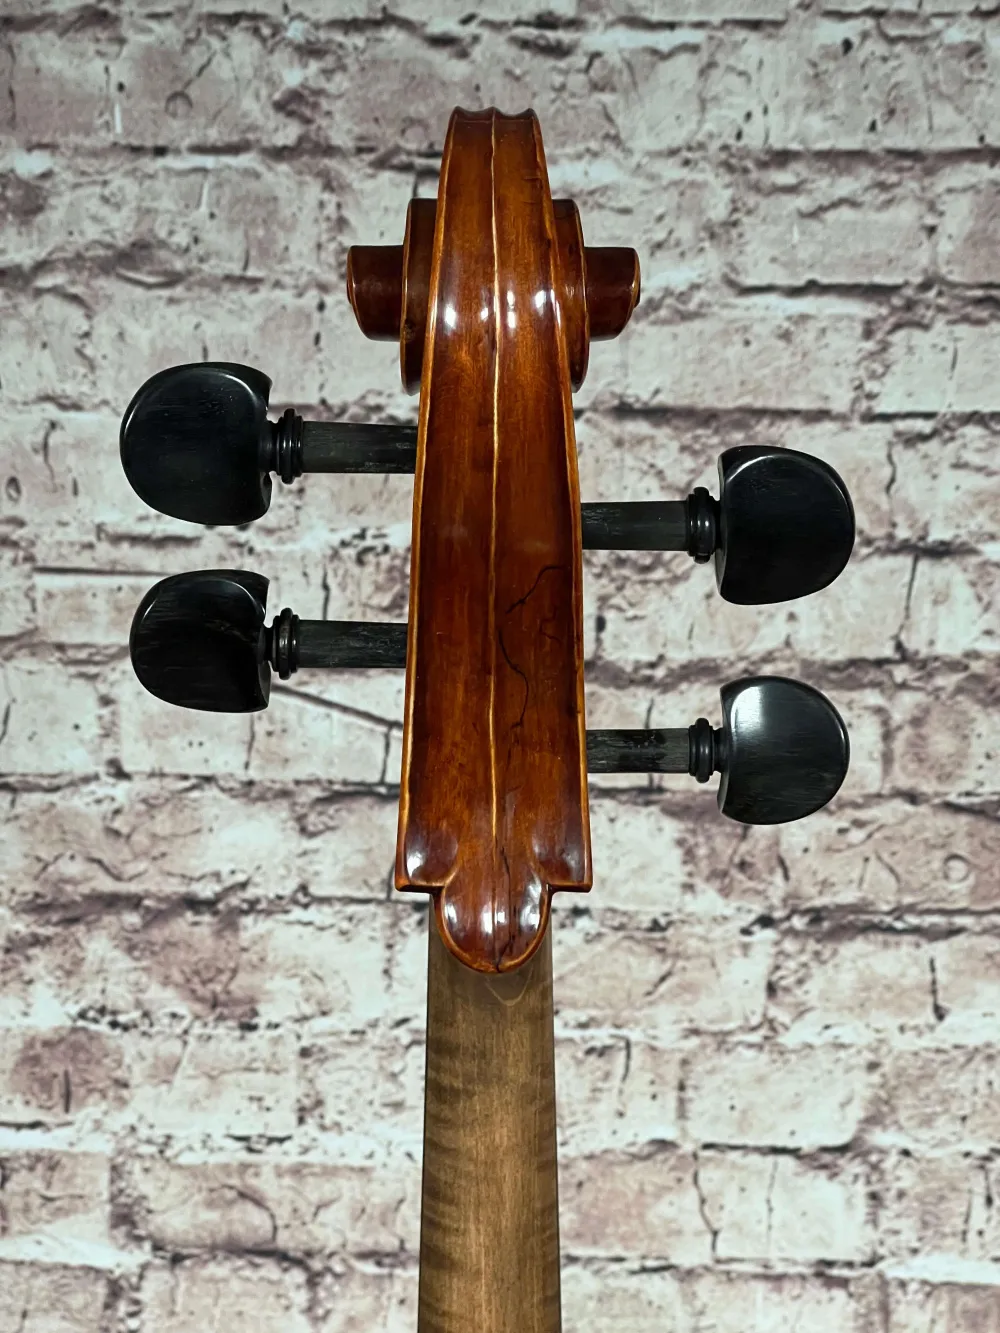 Schnecke-unten-Detailansicht eines nicht spielfertiges Cello (Violoncello) Handarbeit 2022